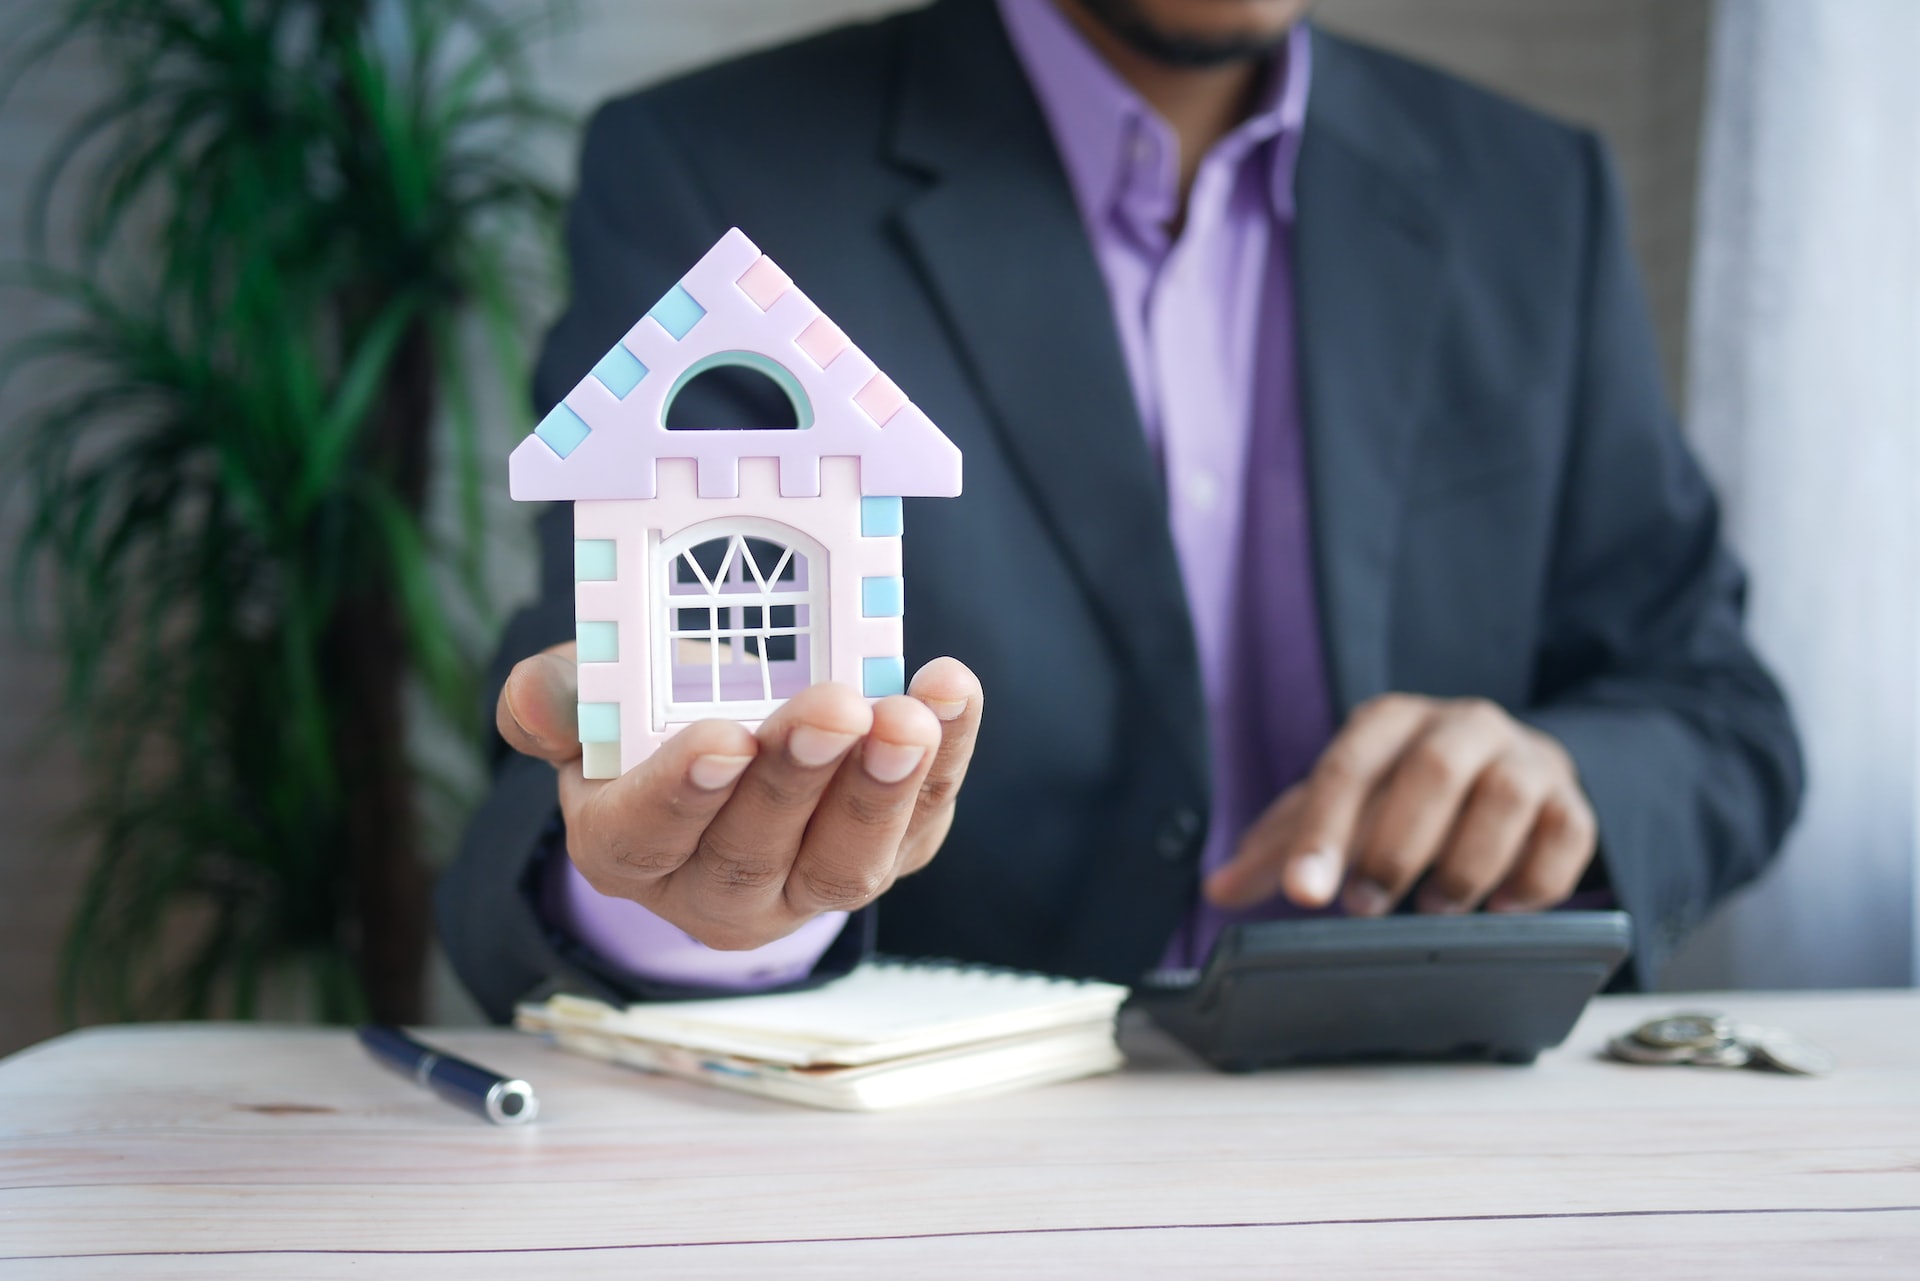 Sprzedaż mieszkania przez agencję nieruchomości — co warto wiedzieć?